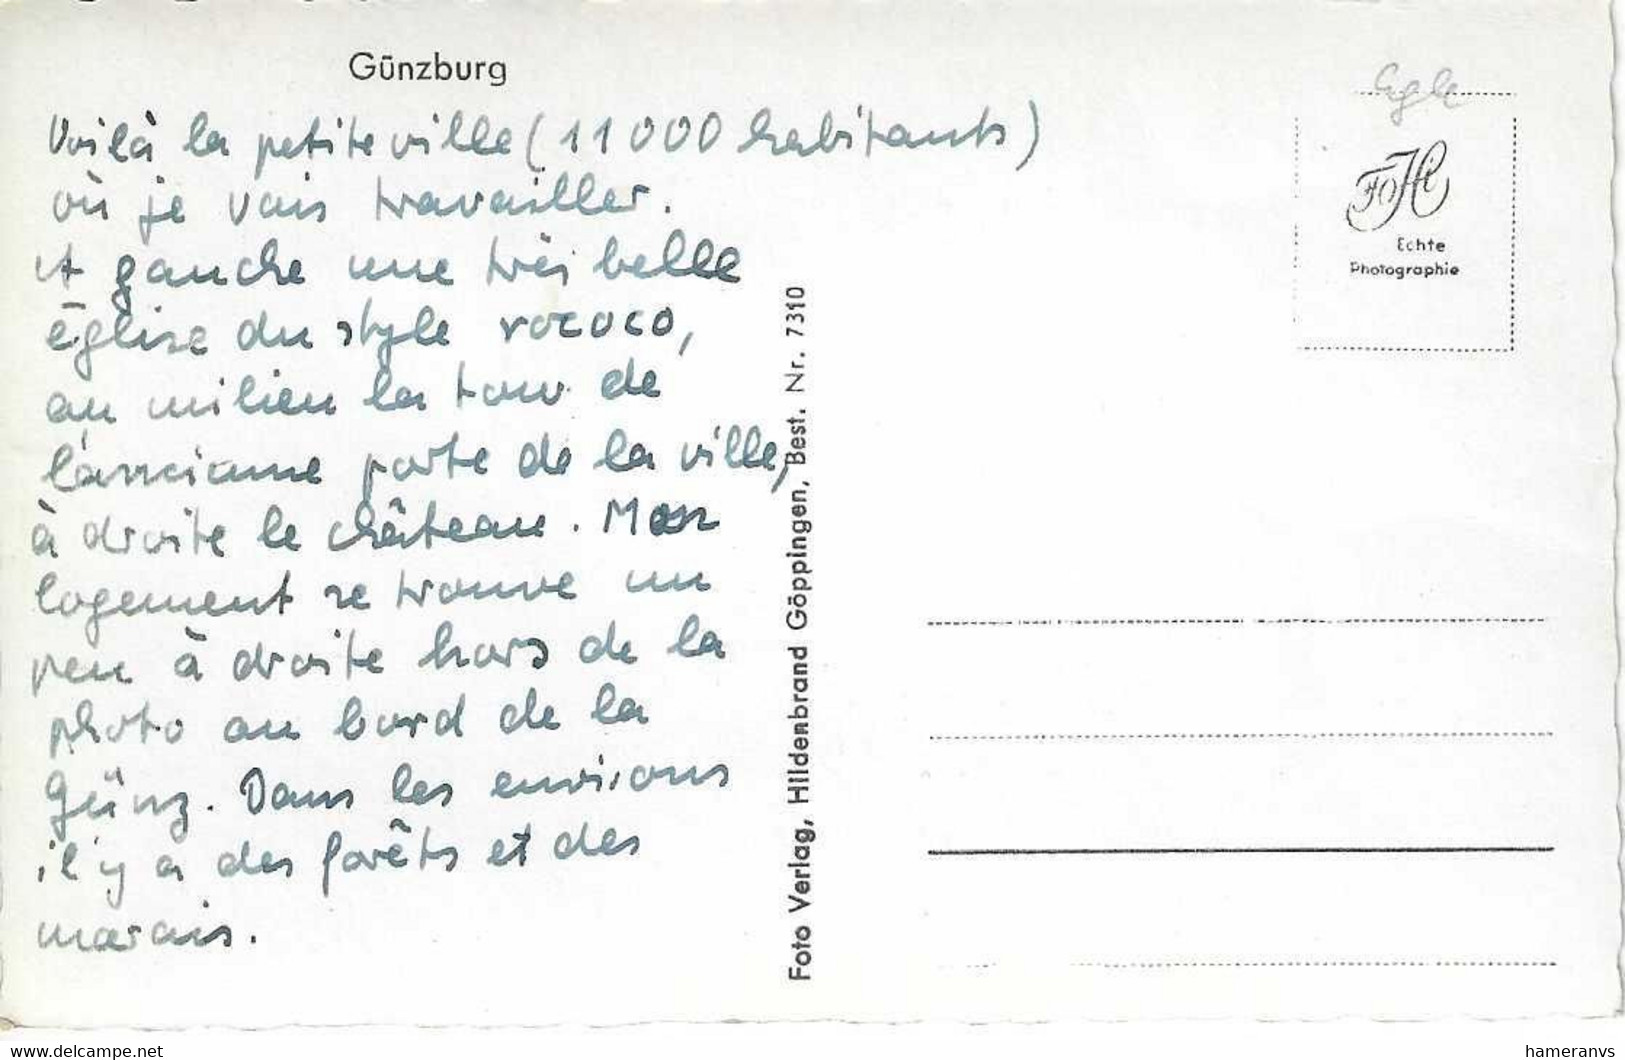 Günzburg - HP2394 - Guenzburg